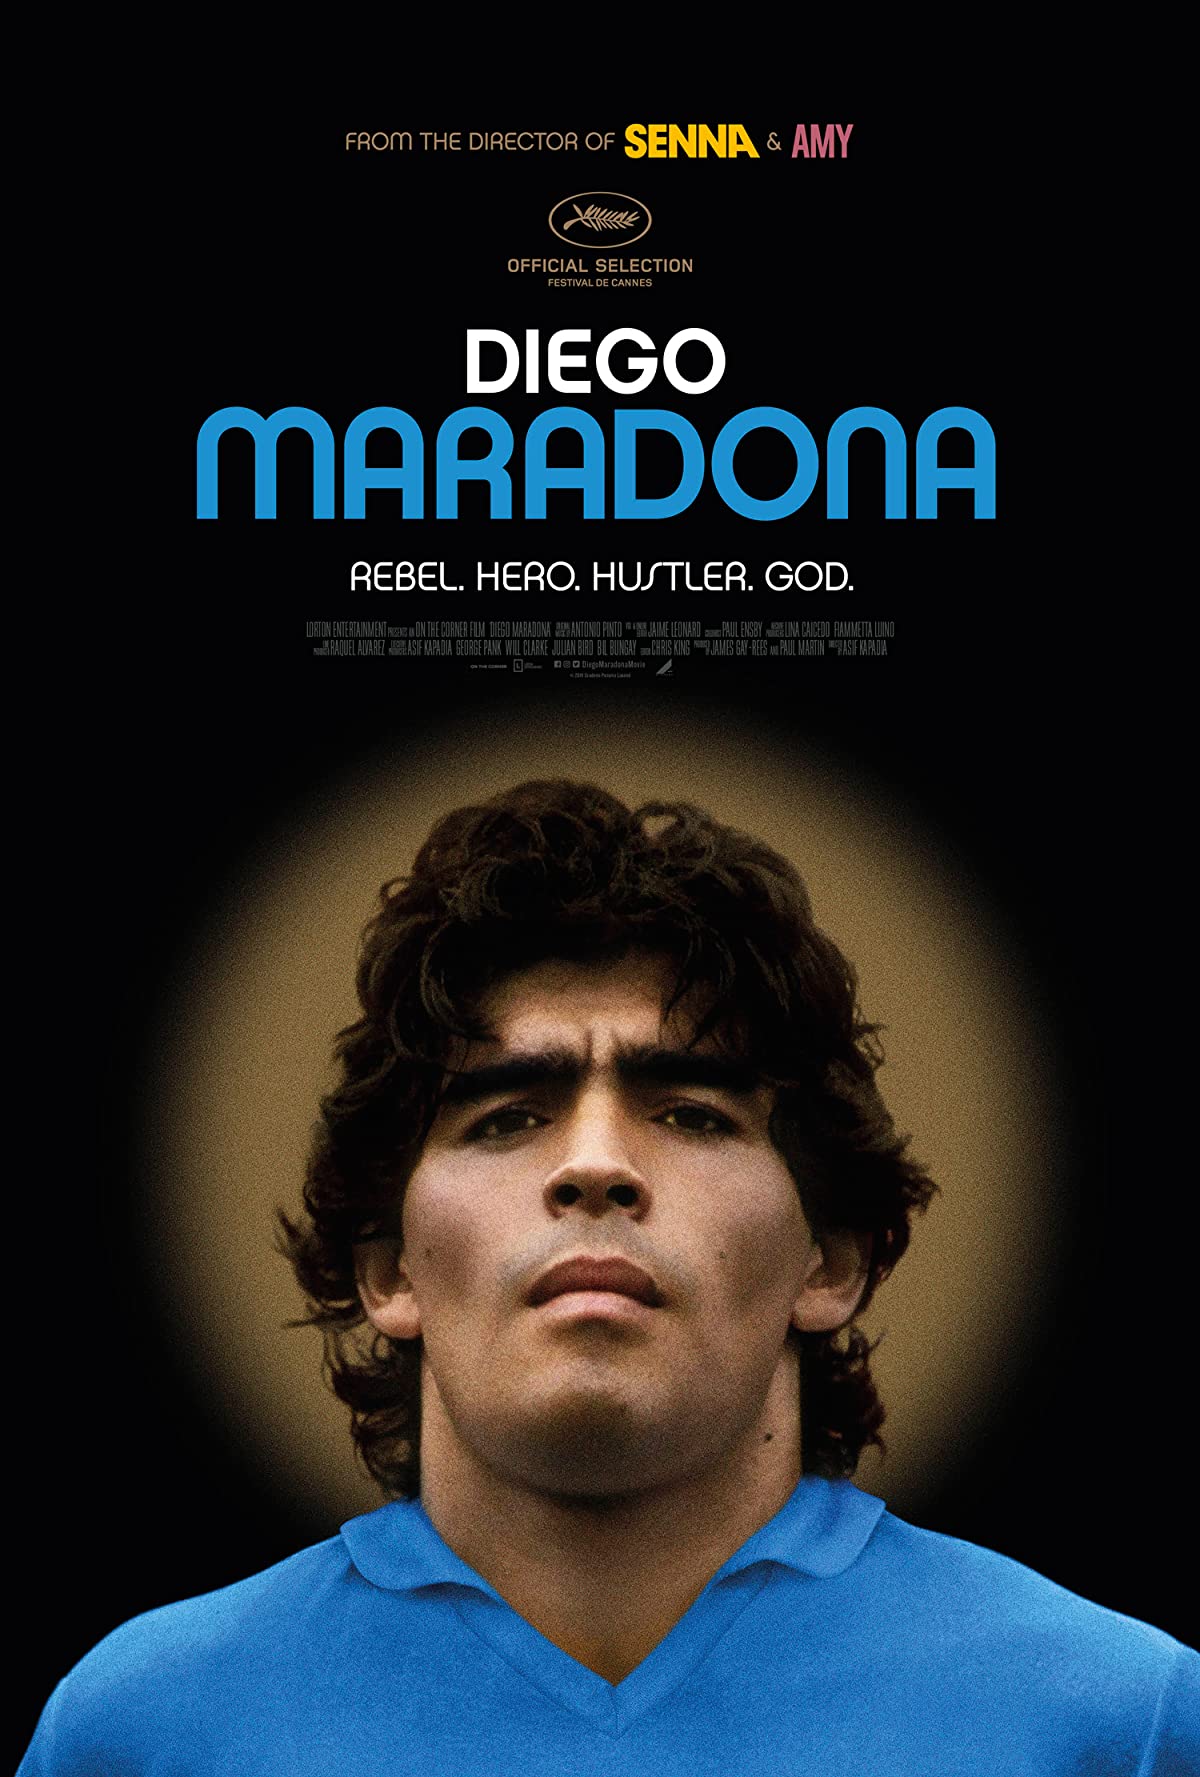 دانلود مستند Diego Maradona 2019 دیگو مارادونا با دوبله فارسی